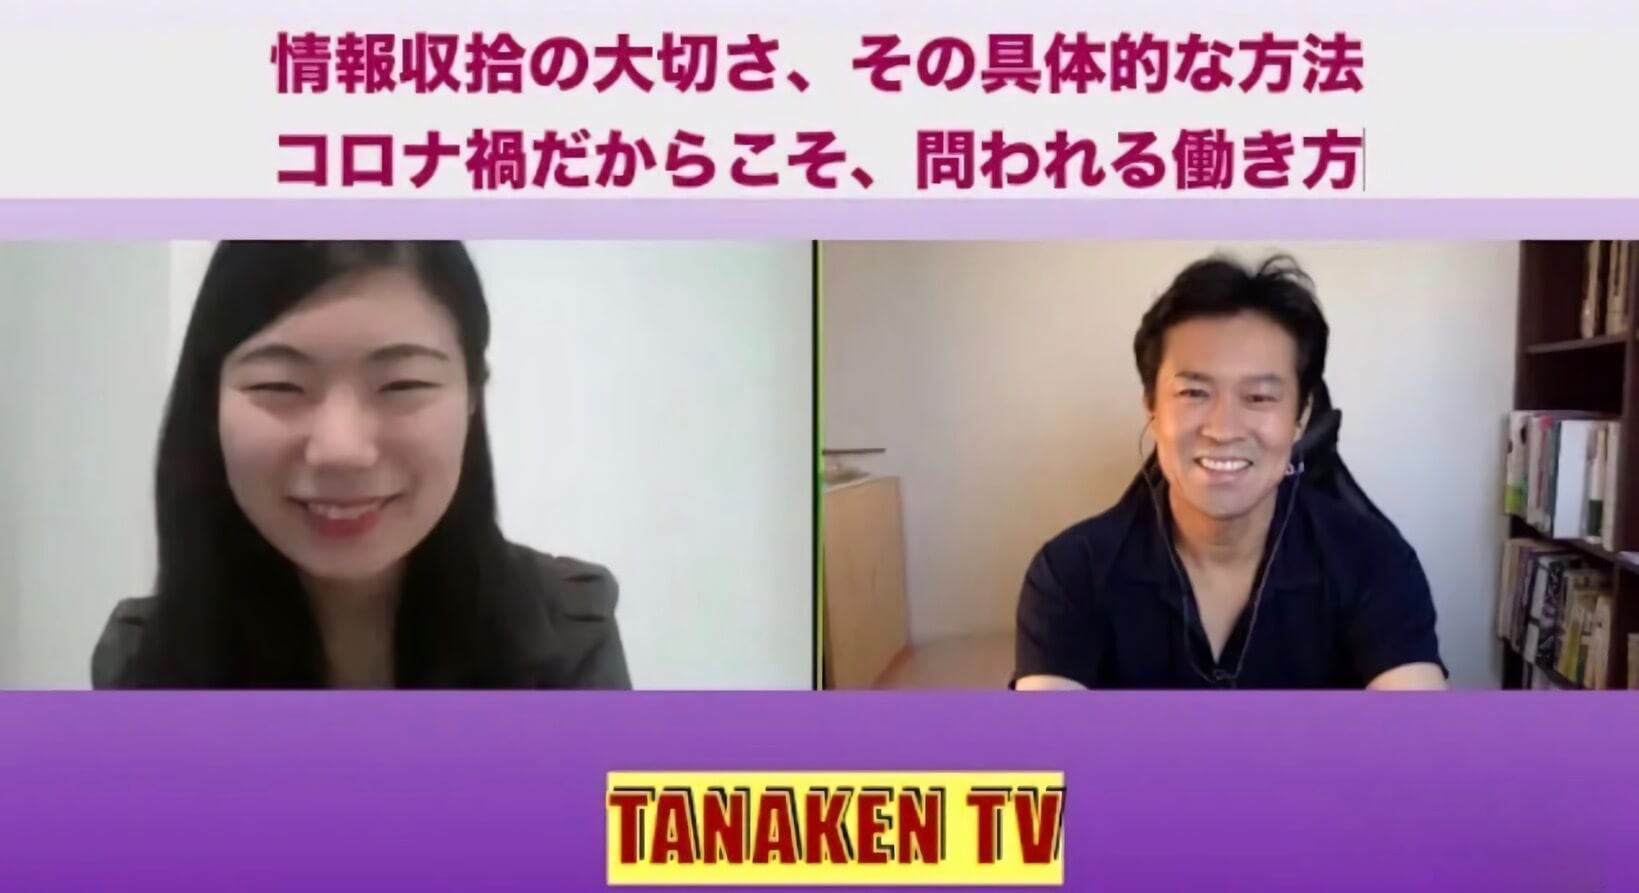 新卒採用担当・荒木が法政大学キャリアデザイン学部の田中研之輔教授の『TANAKEN TV』に登壇しました